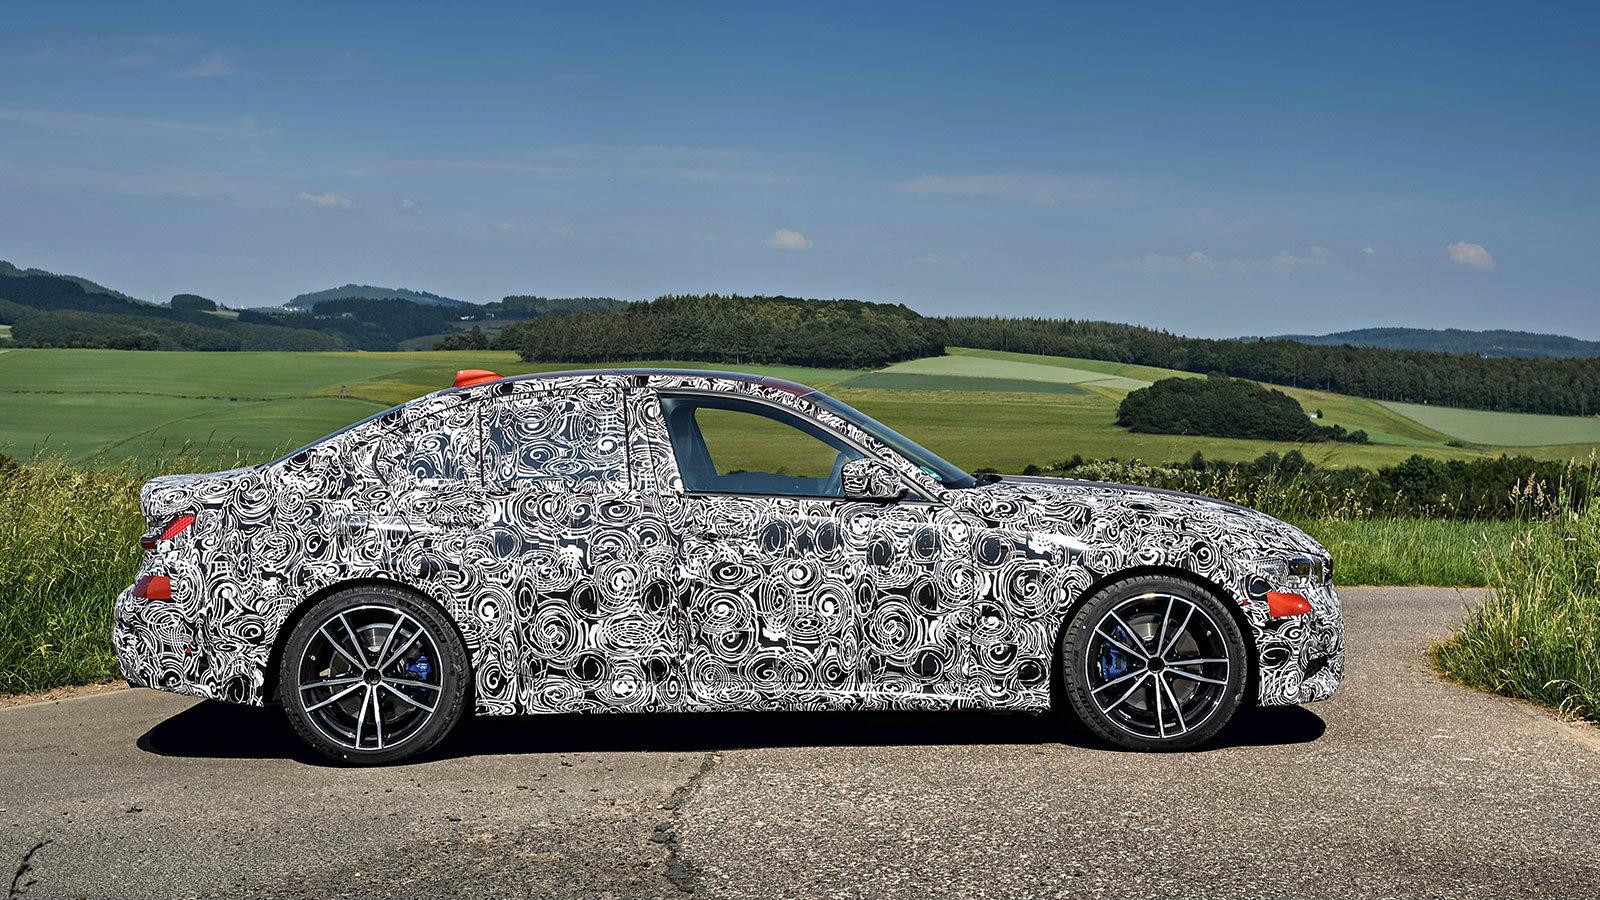 Δυναμική, ακόμη και σταματημένη:
 Η τυπική γραμμή της BMW δεν κρύβεται με κανένα καμουφλάζ στον κόσμο. 